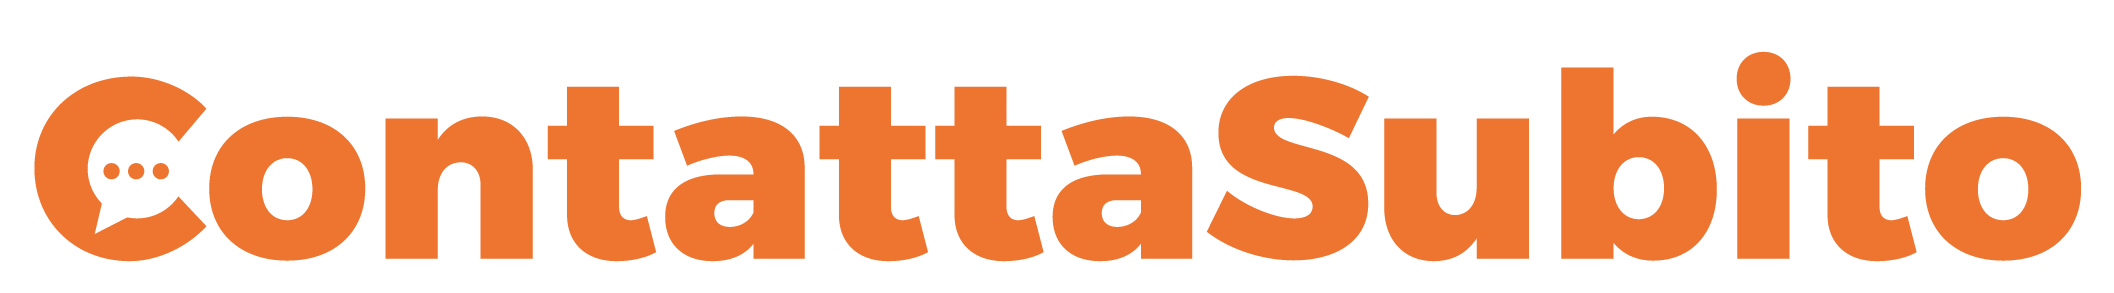 logo Contattasubito.it